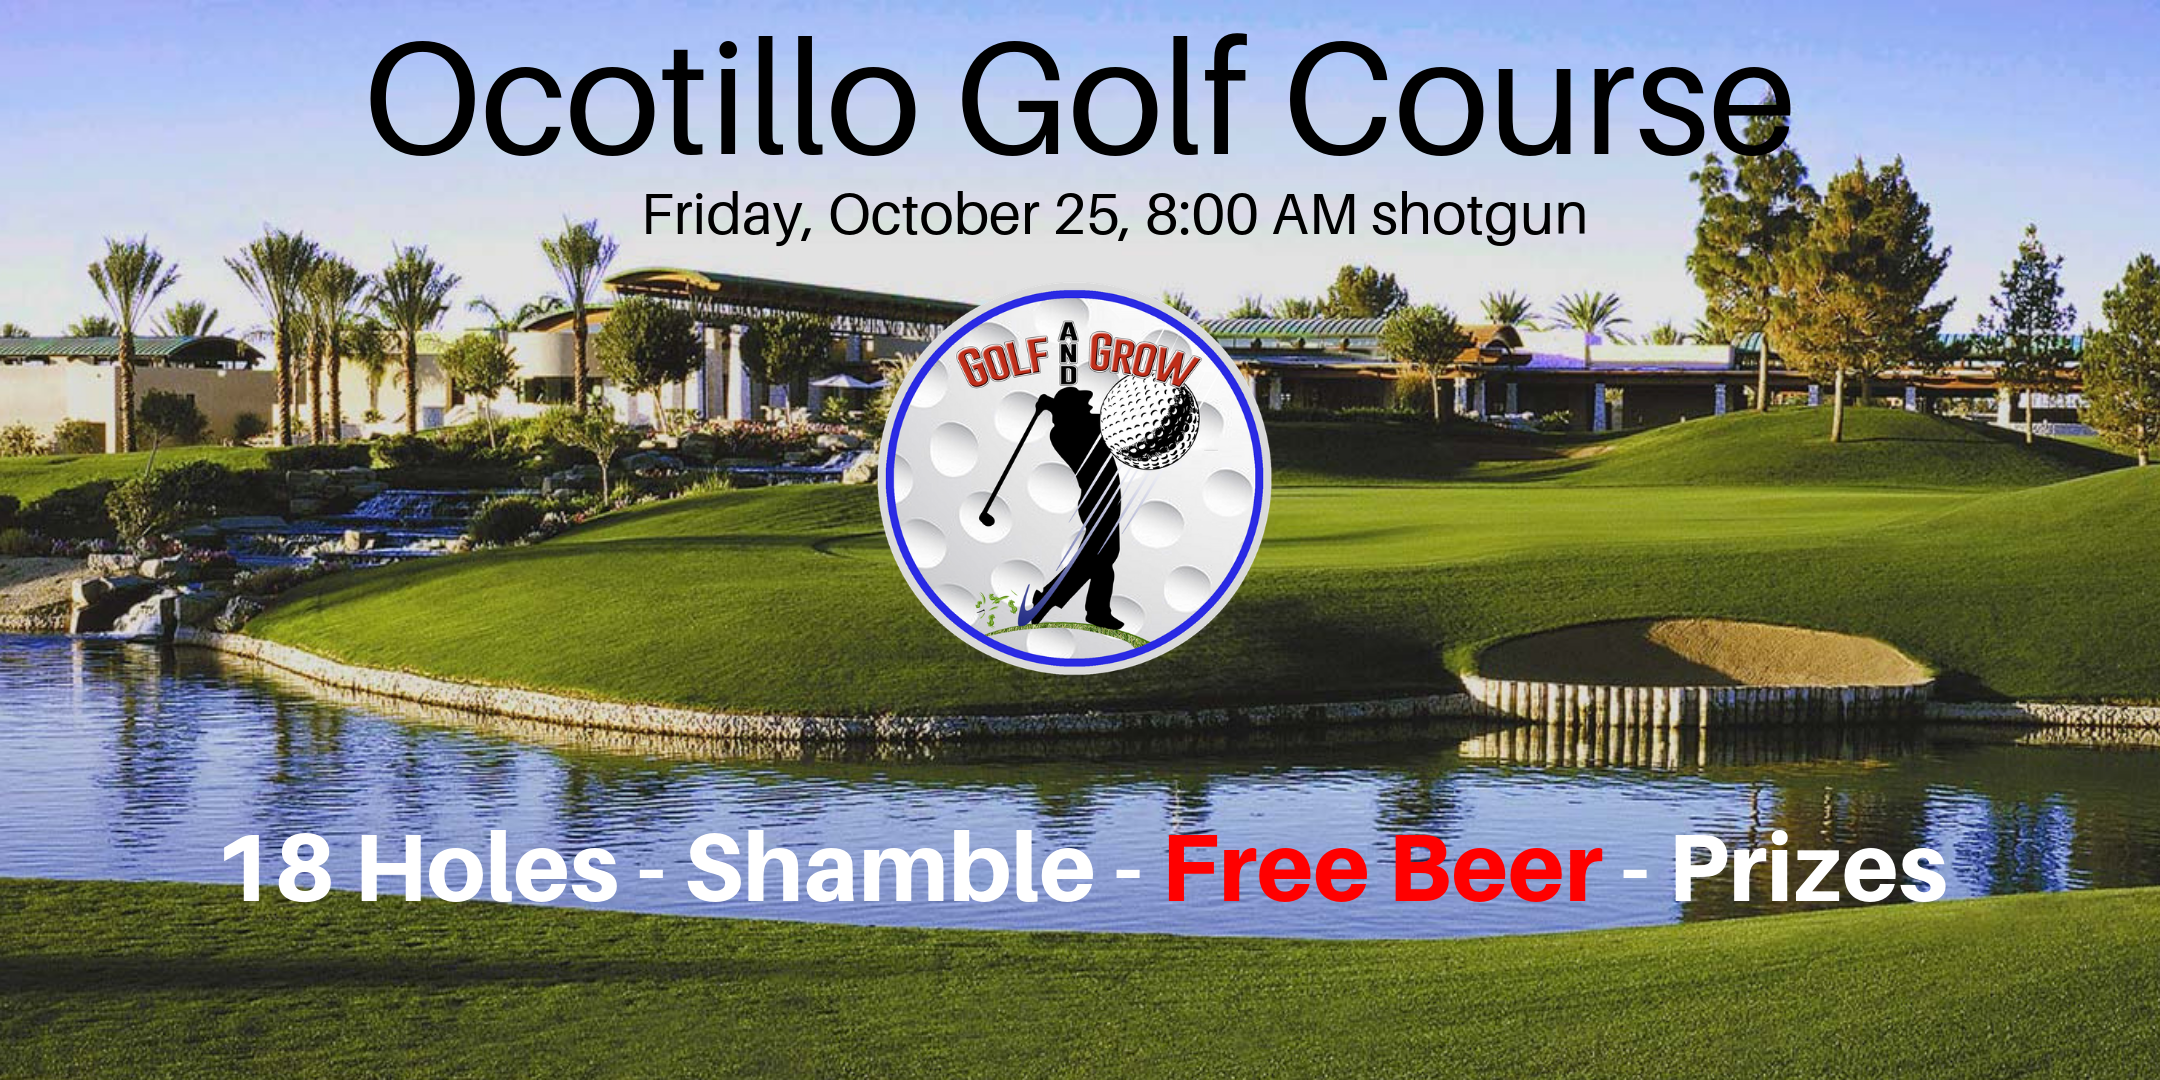 Ocotillo Golf Course 2-Player Shamble